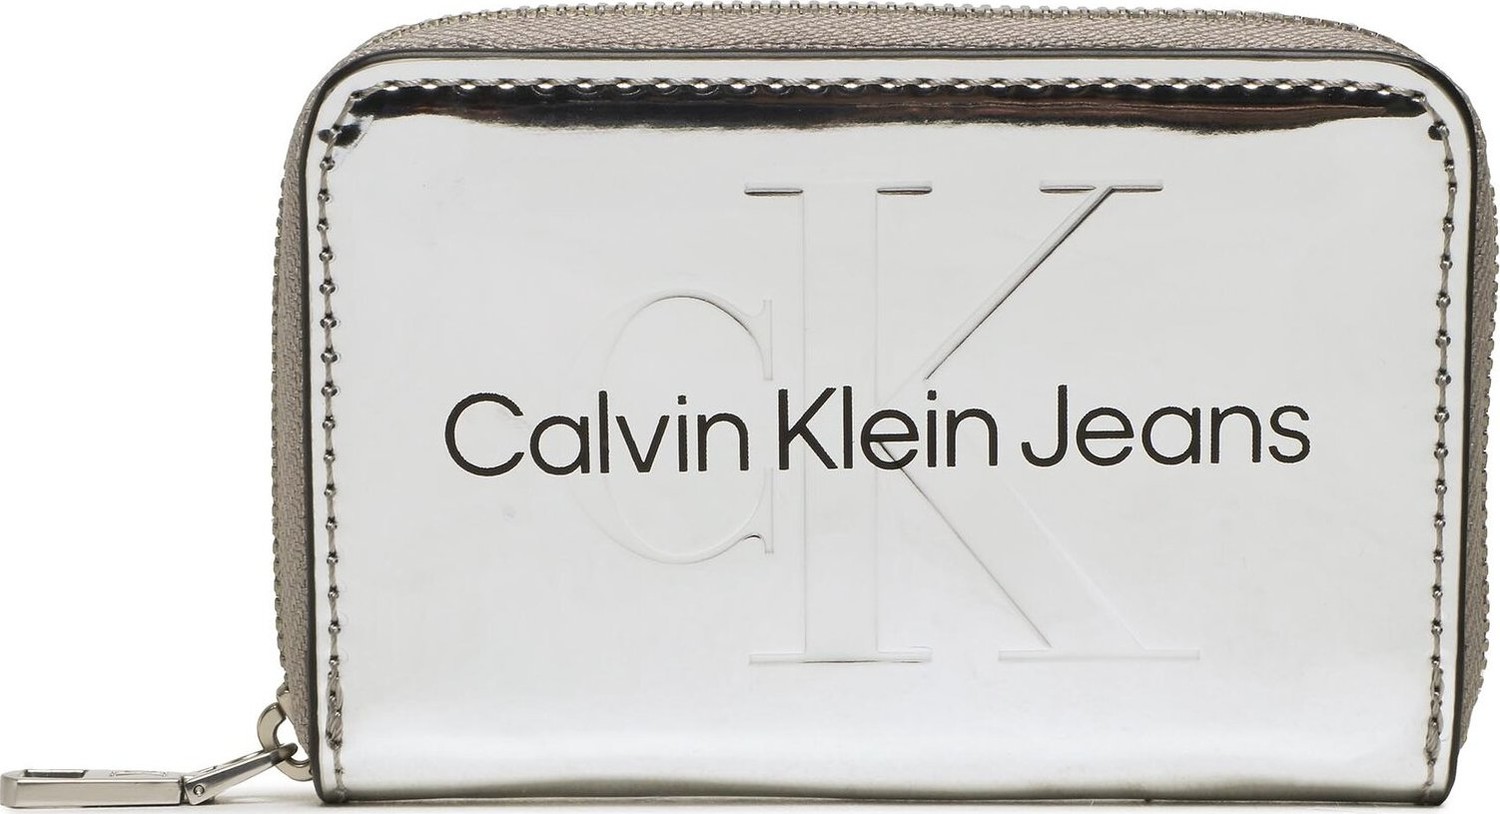 Malá dámská peněženka Calvin Klein Jeans Sculpted Med Zip Around K60K610405 01O